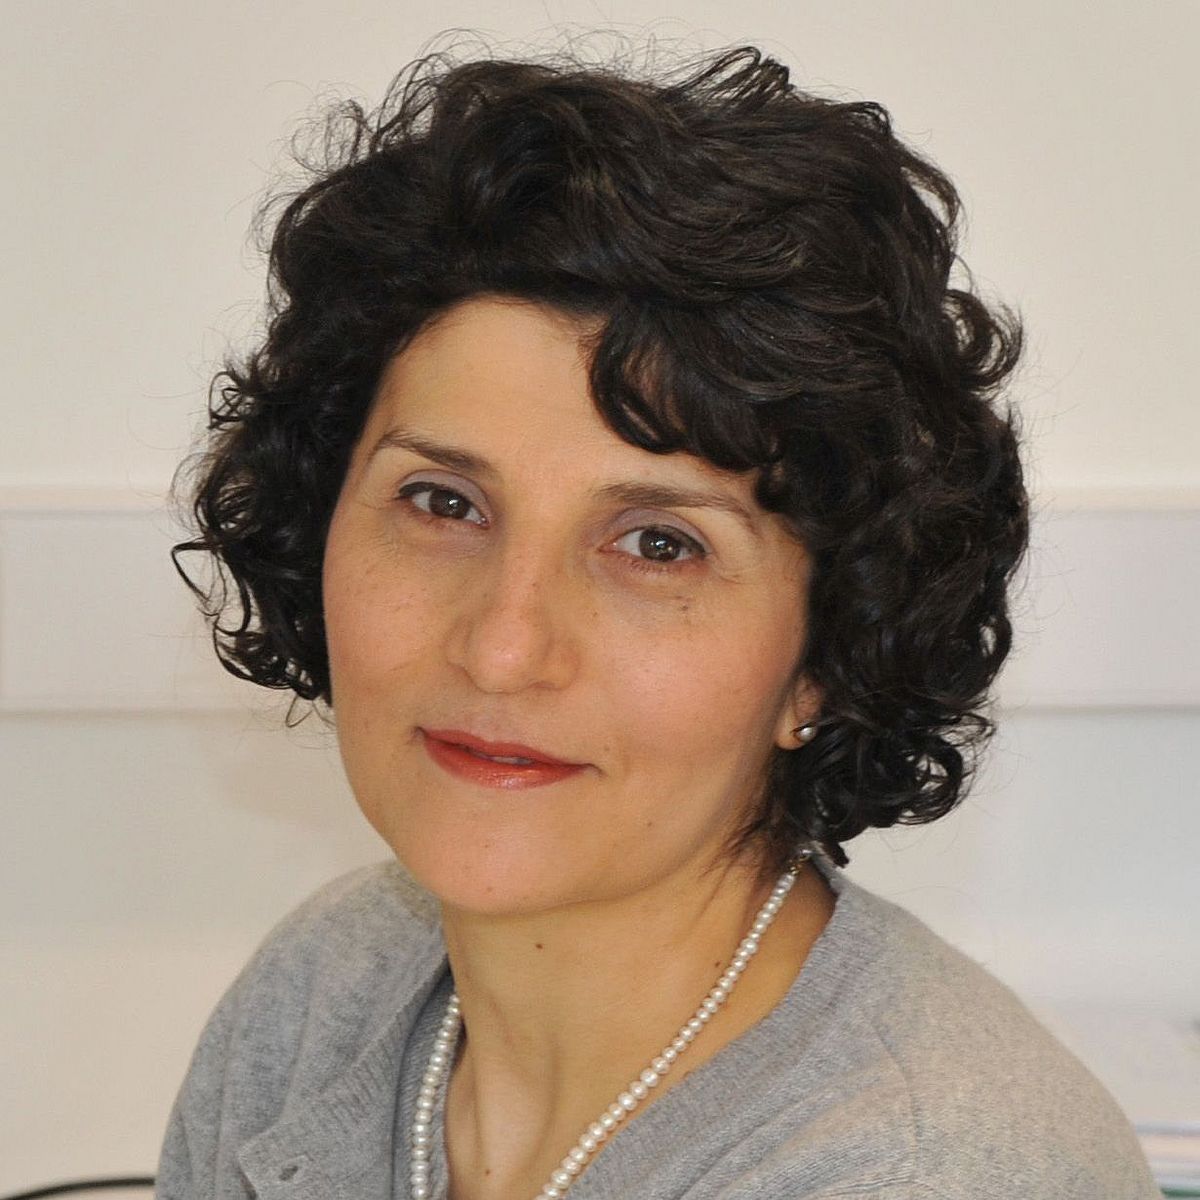 Prof. Deniz Tasdemir - Leiterin der Forschungseinheit